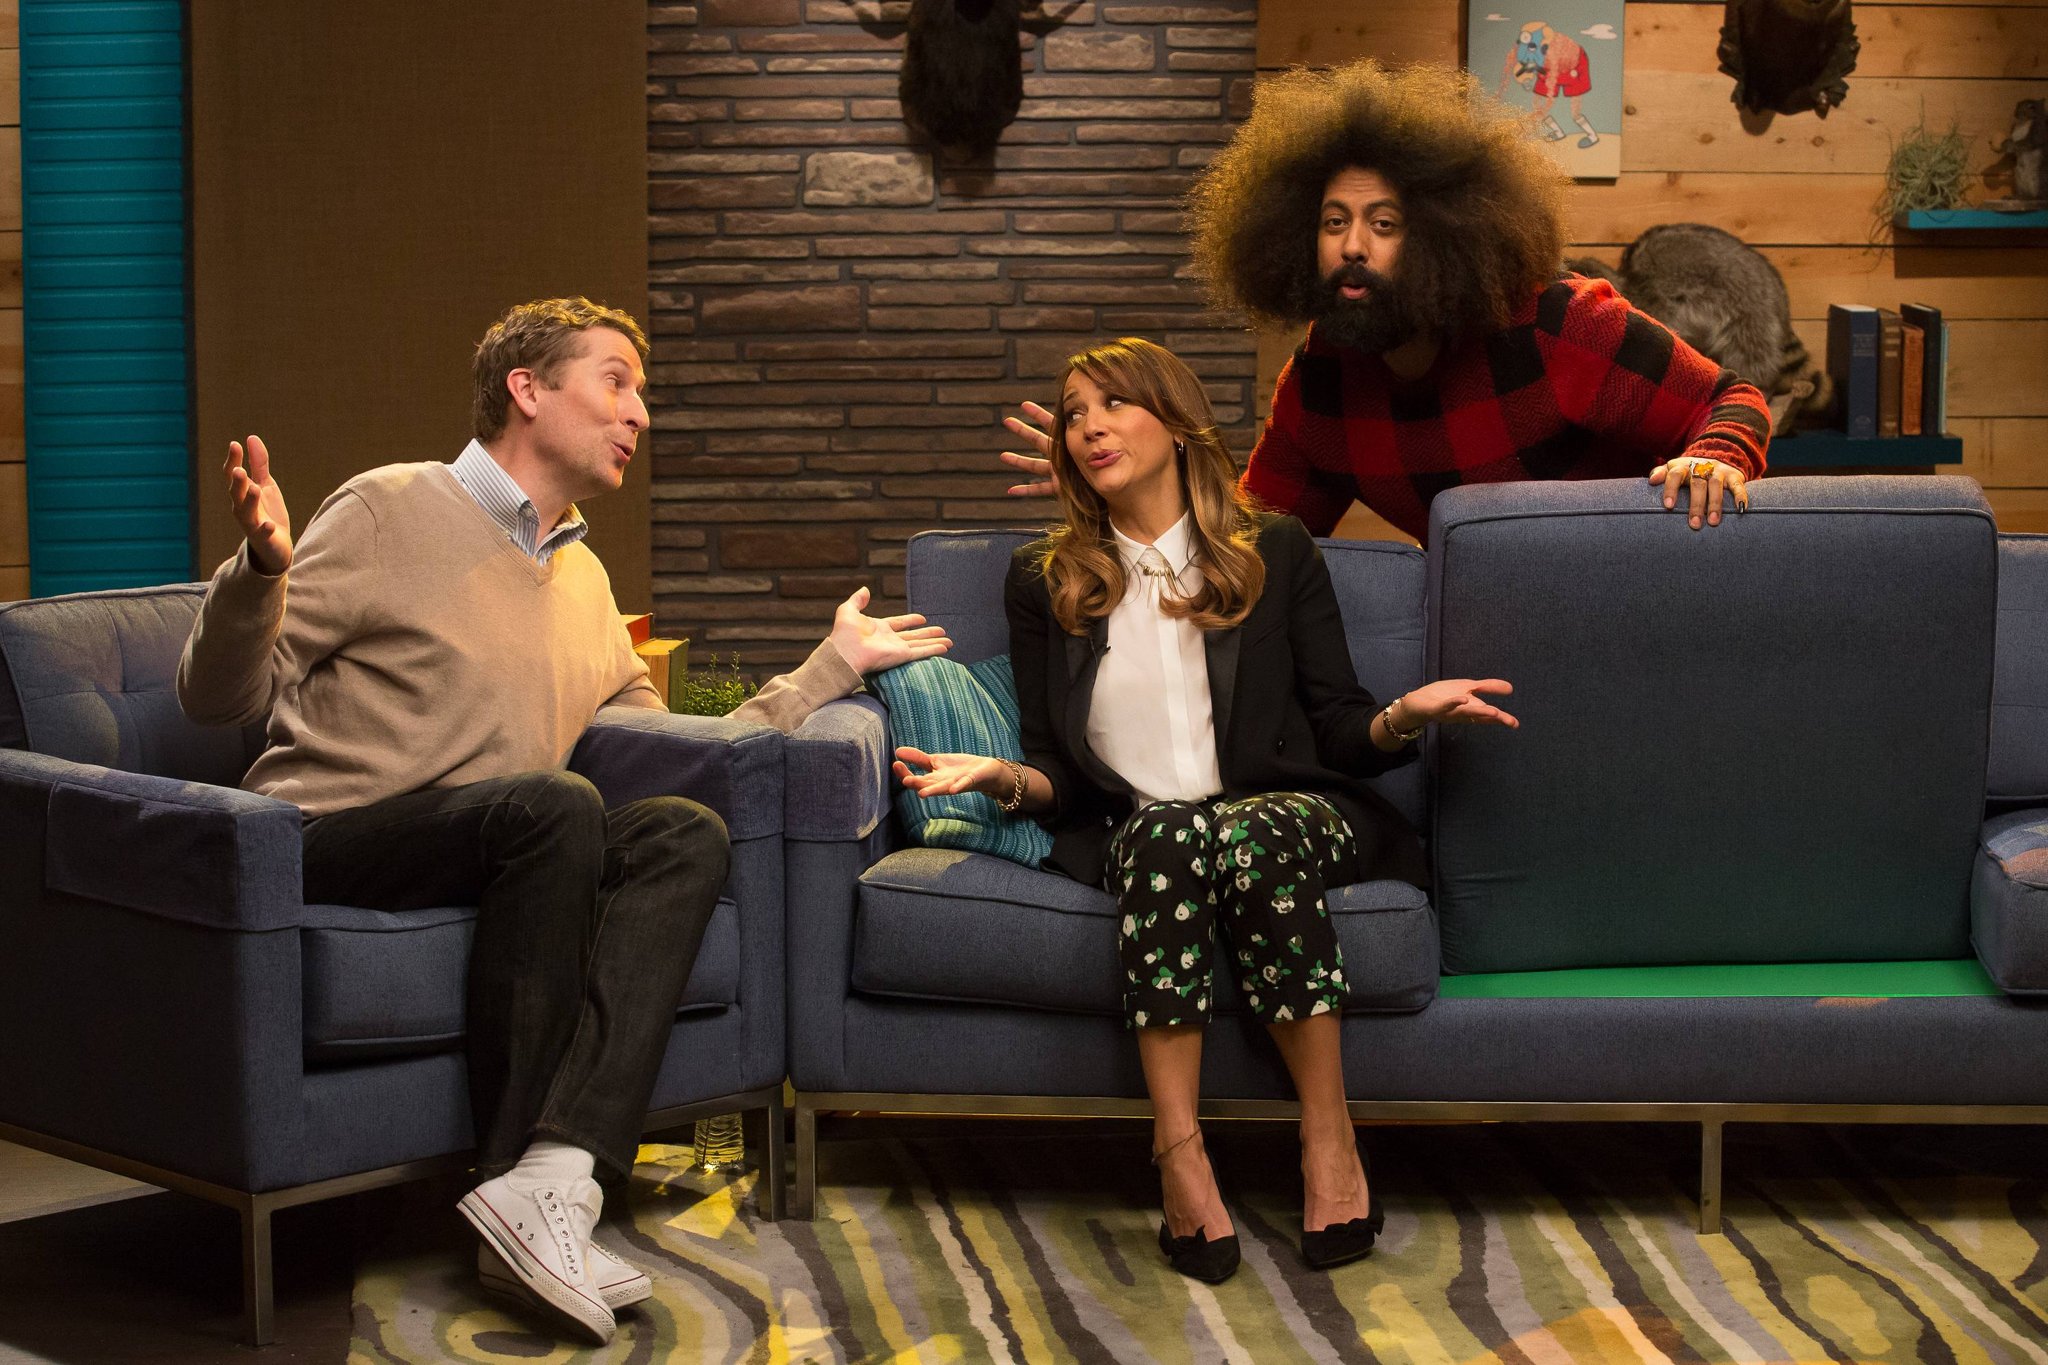 Scott Aukerman, Rashida Jones, and Reggie Watts in Comedy Bang Bang (via IFI)